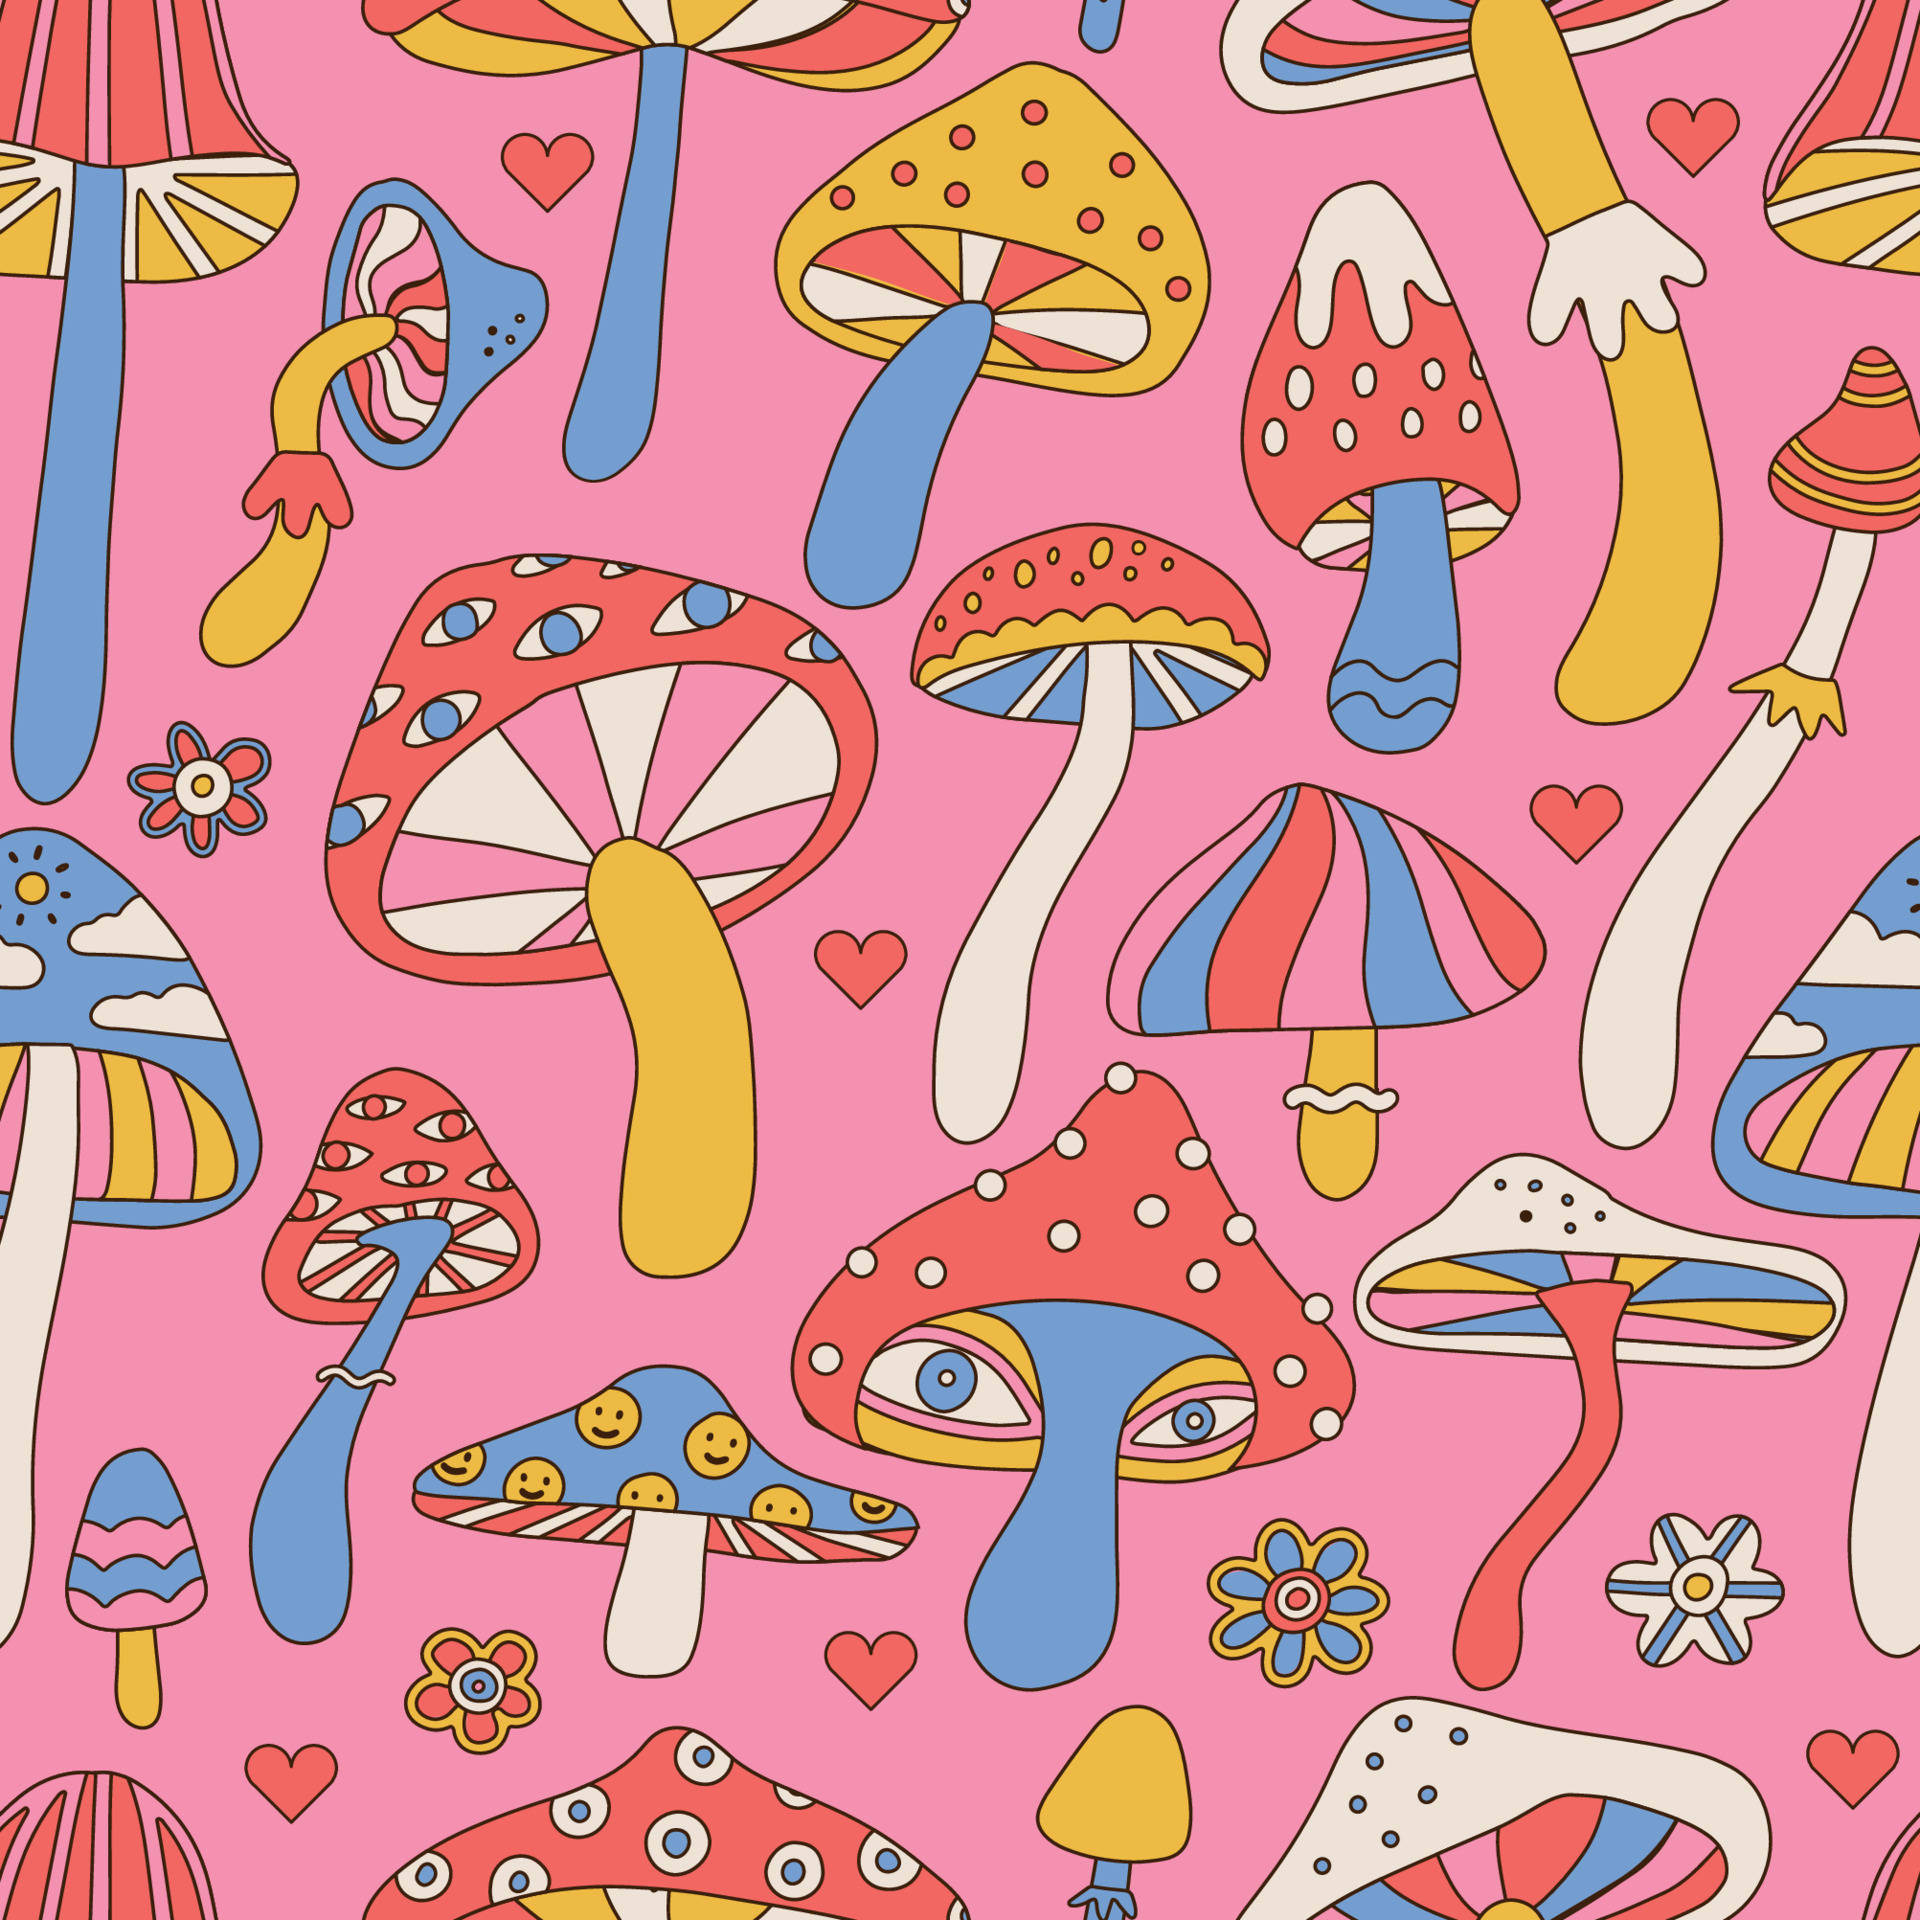 En levende psykedelisk svamp i en fristende flerfarvet miljø. Wallpaper